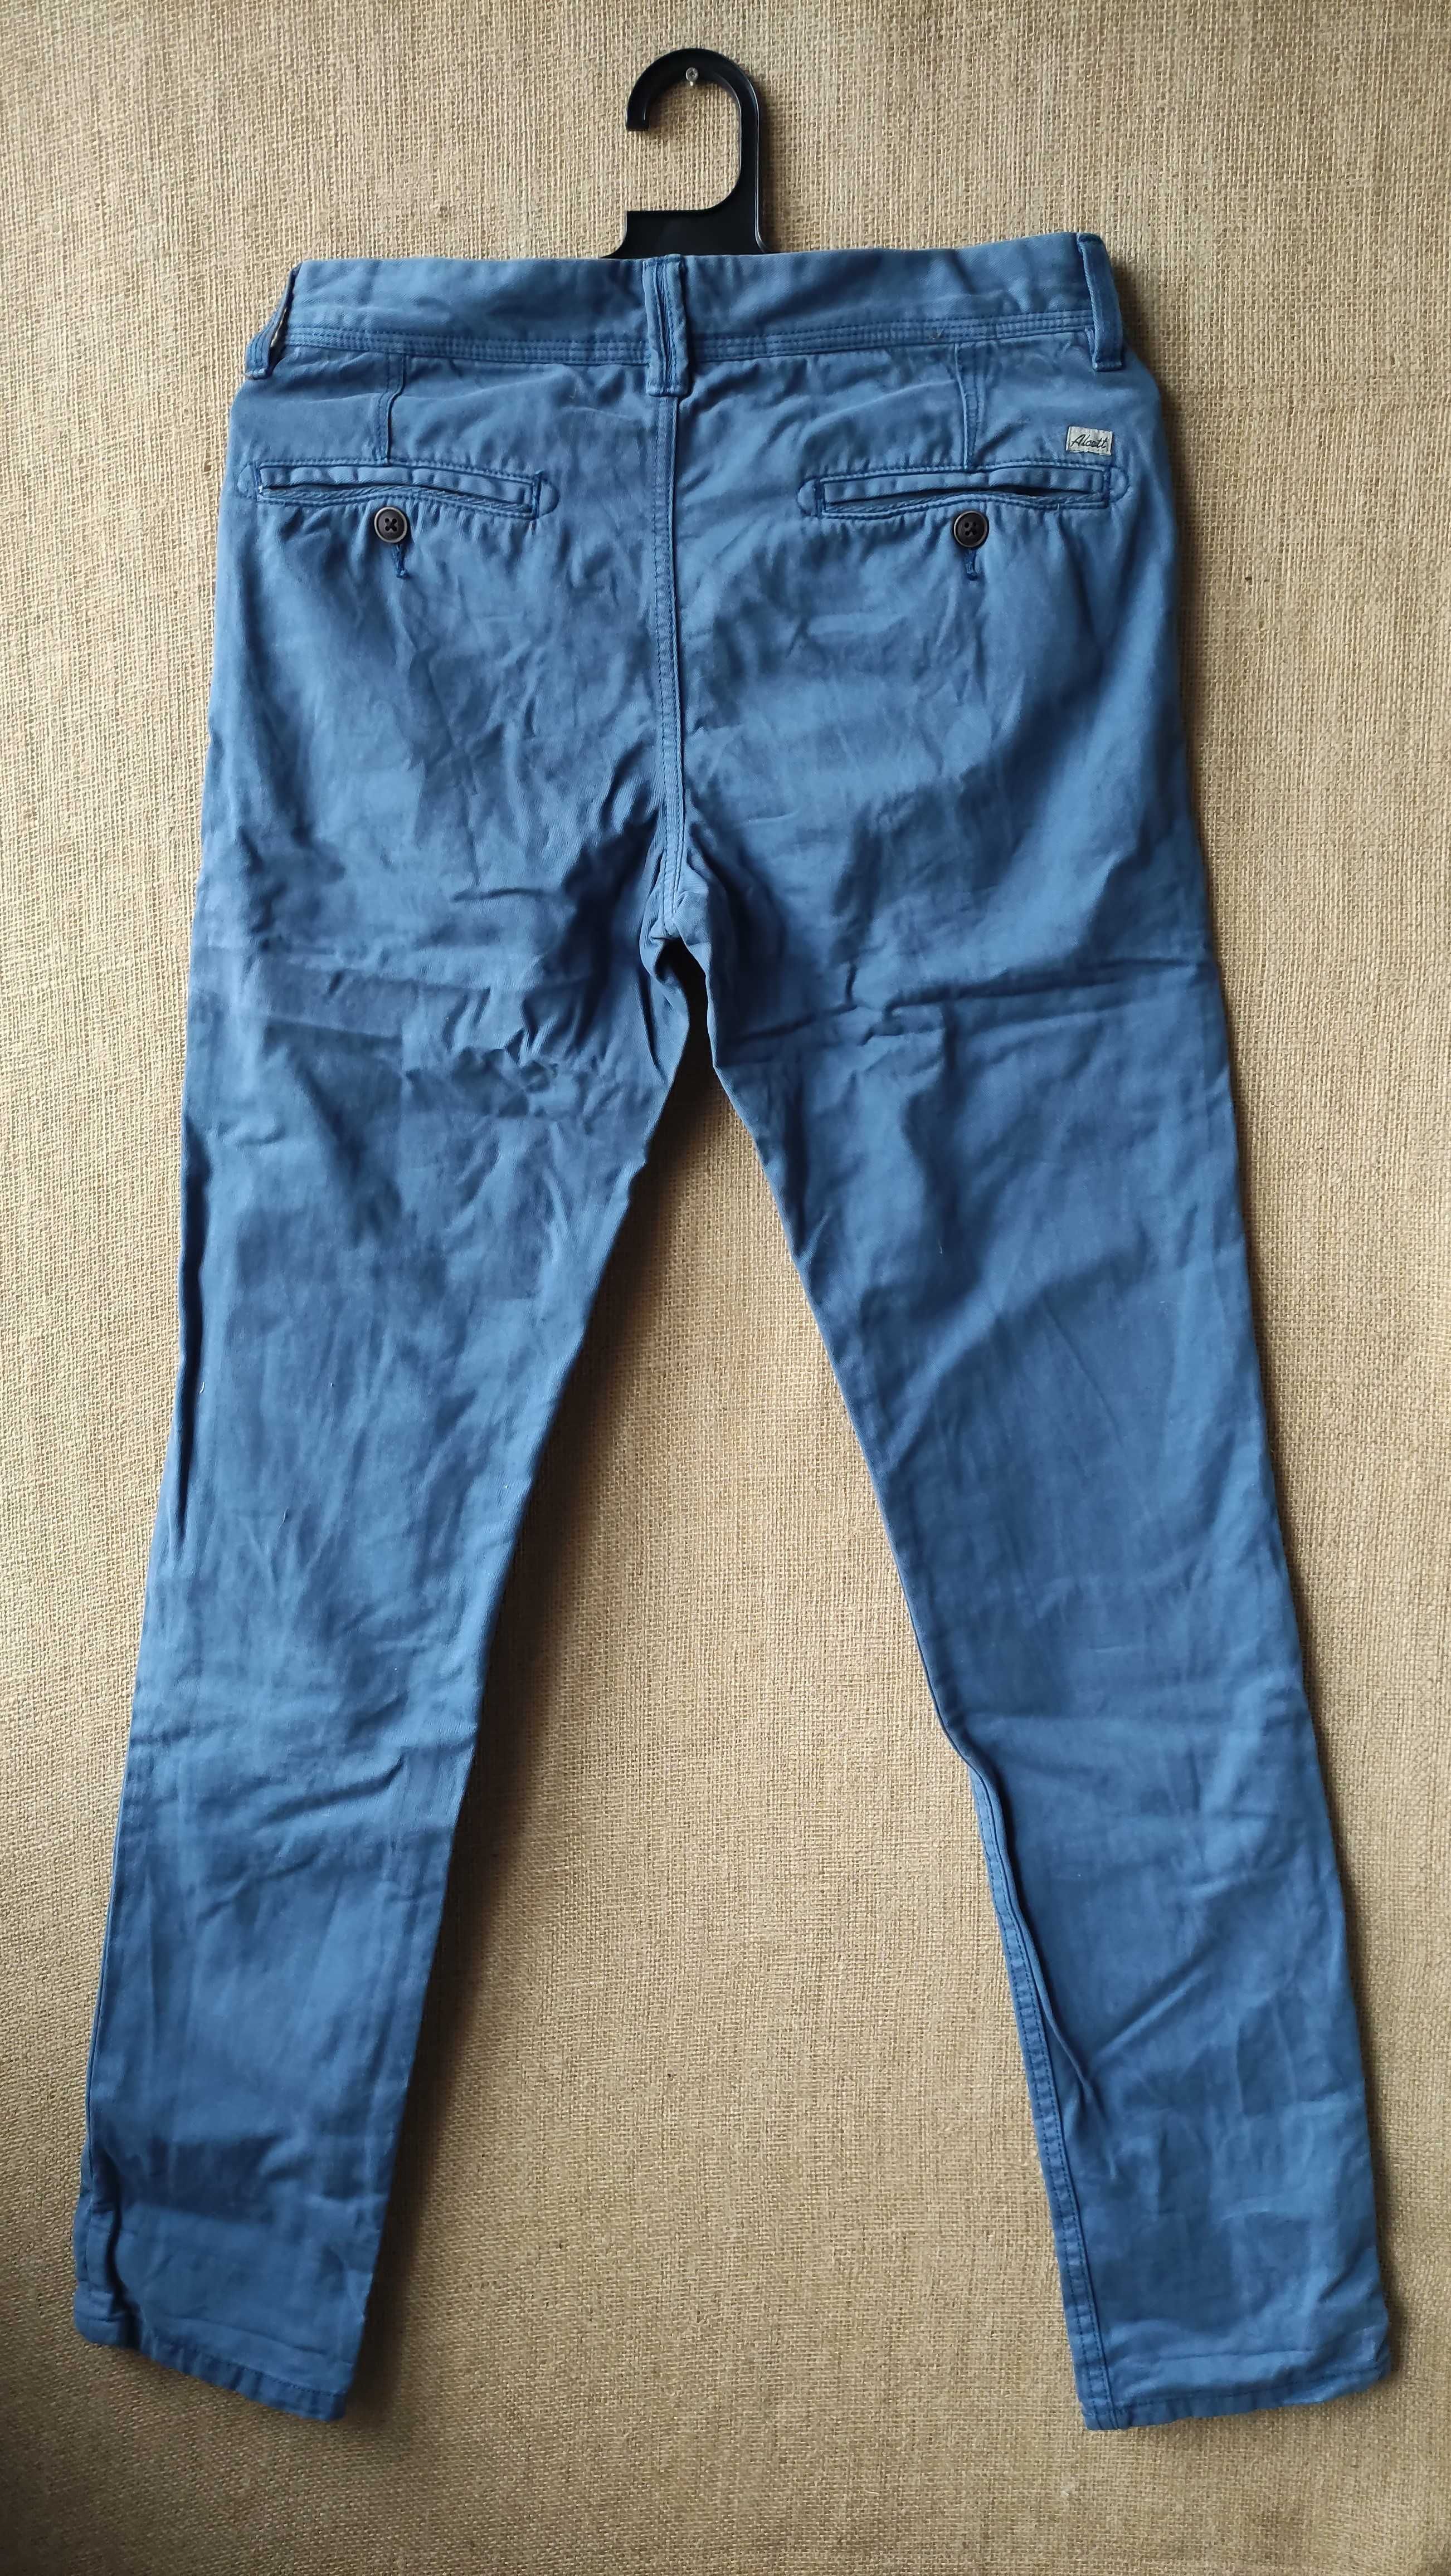 Мъжки панталон, син, памучен, марка ALCOTT&CO, размер S